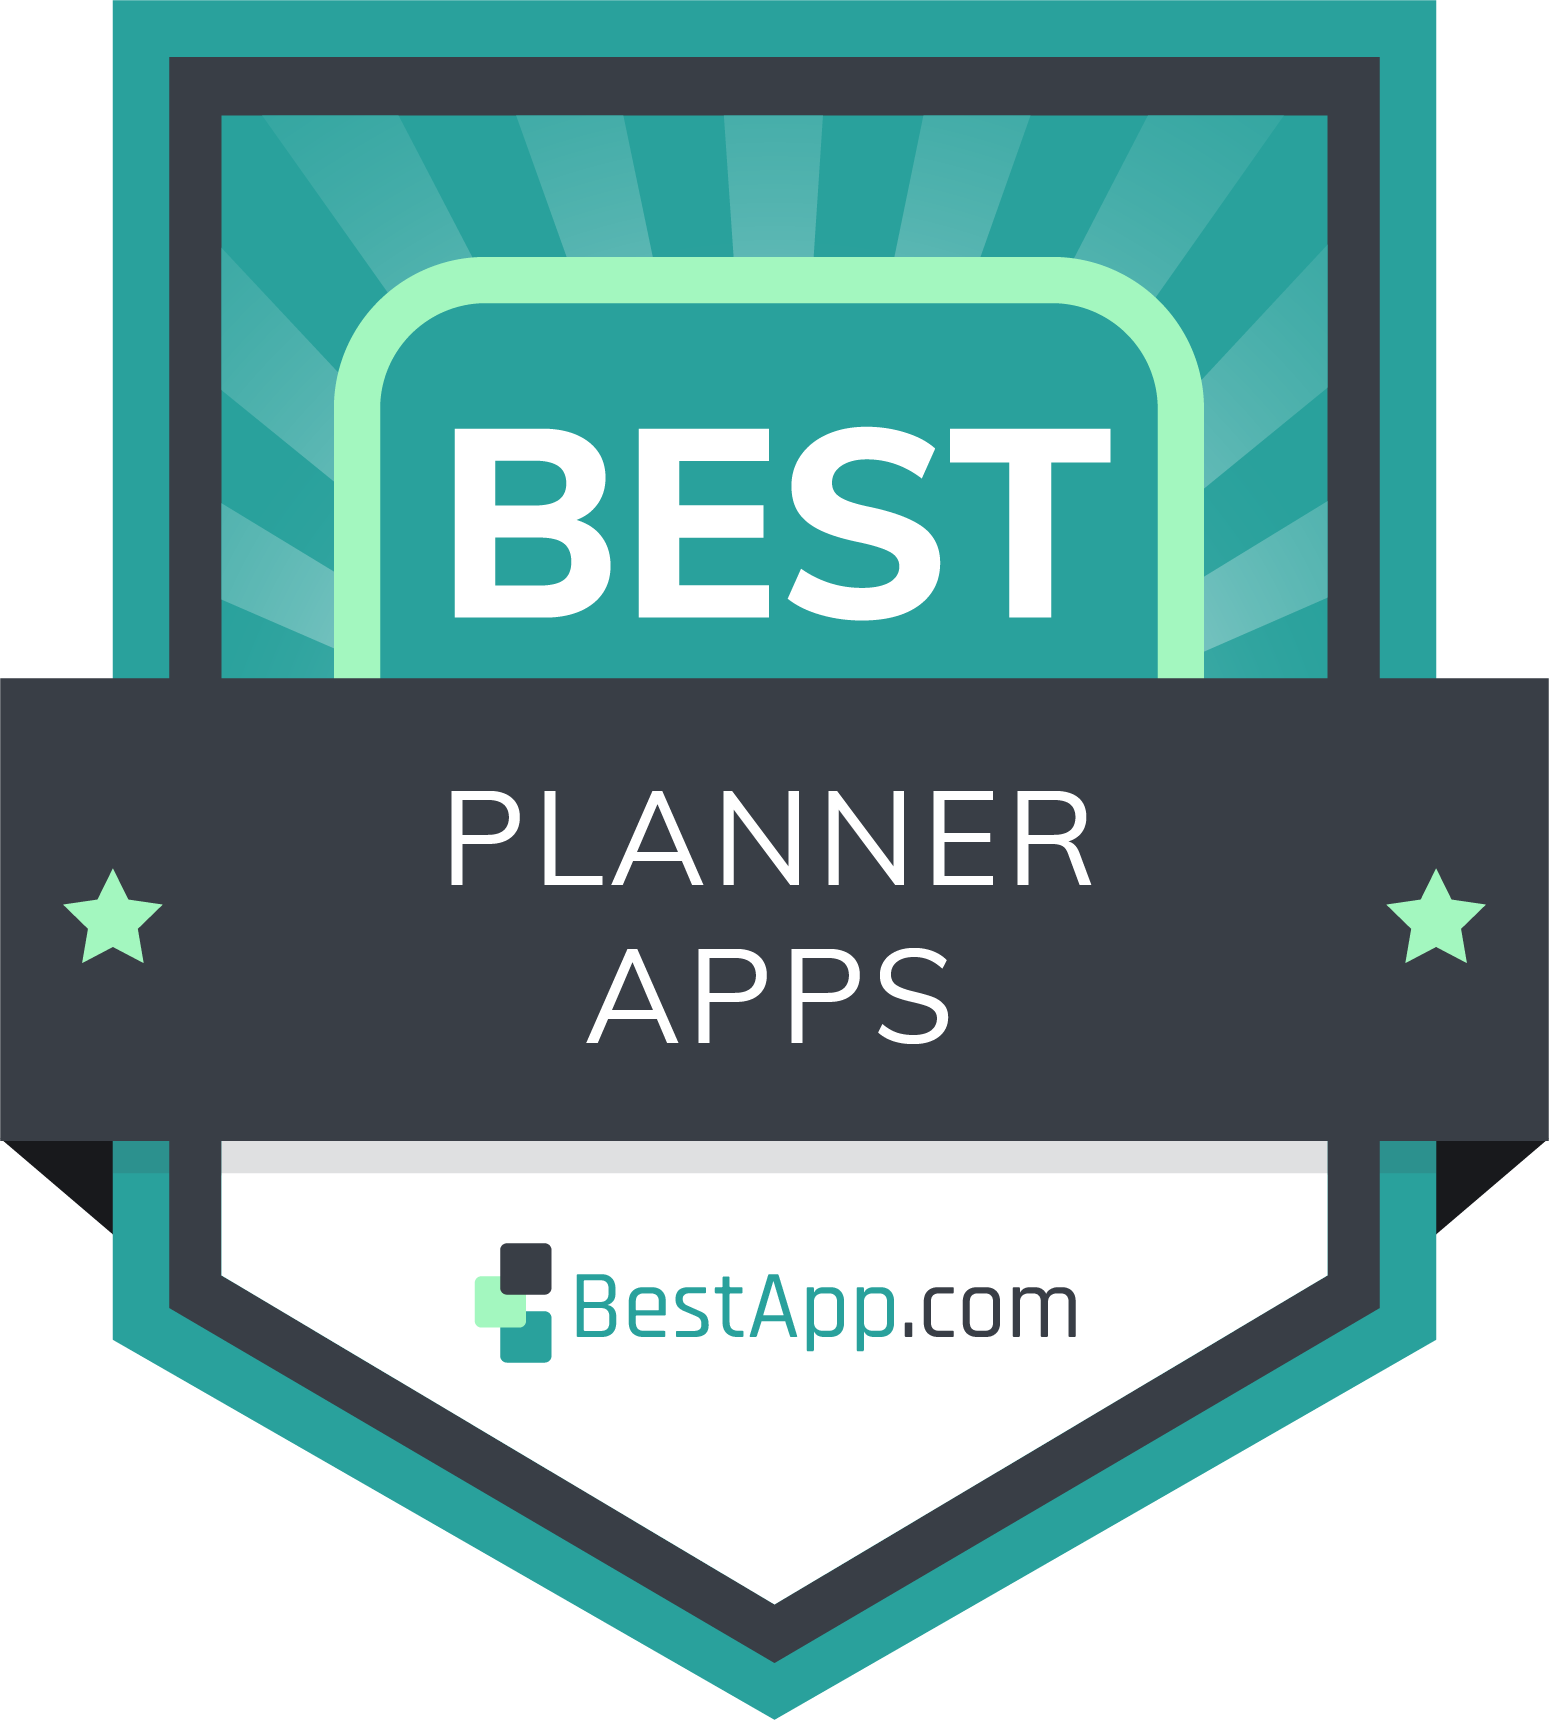 Best Planner Apps Badge